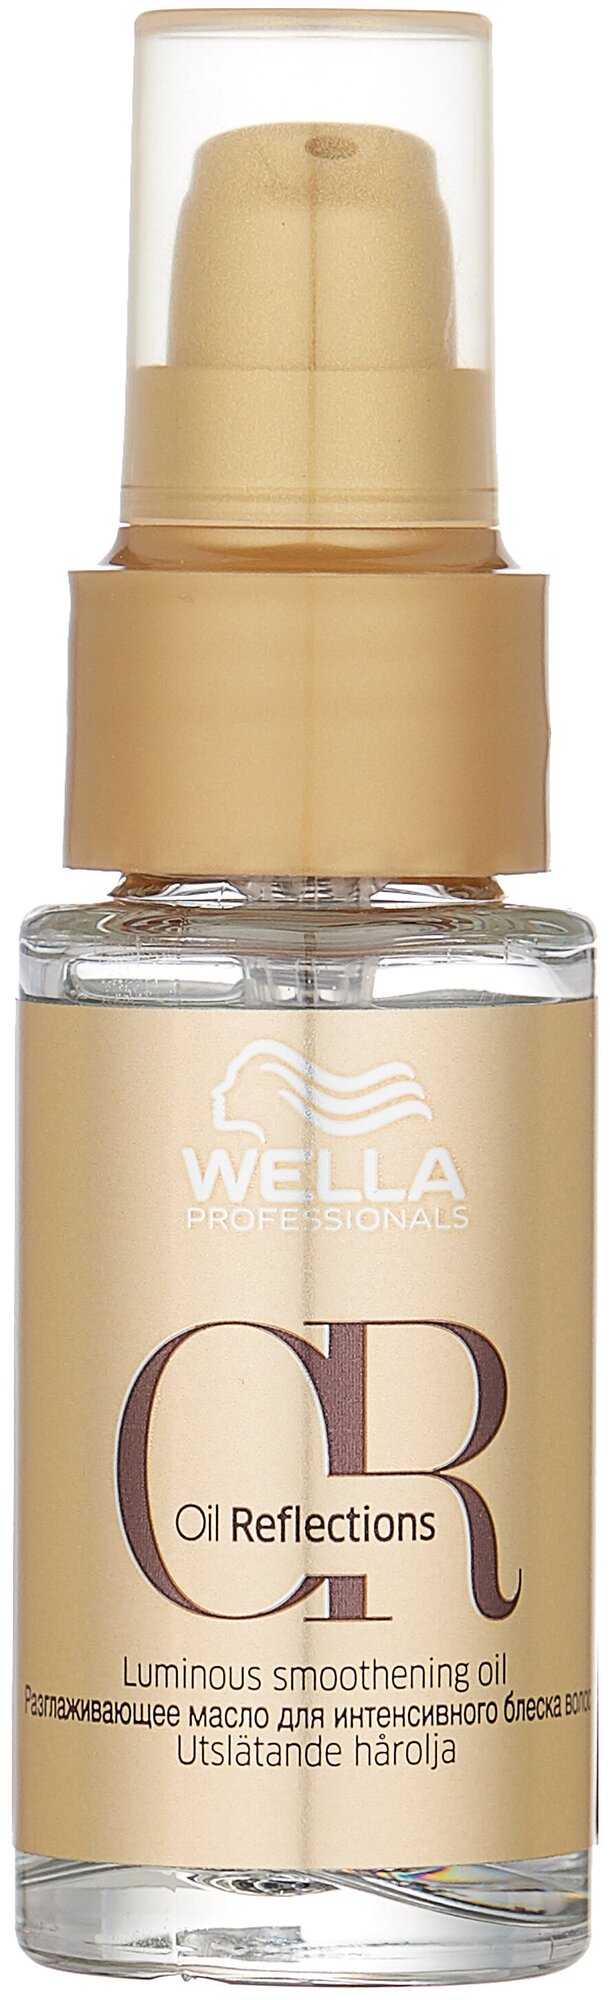 Wella Professionals Oil Reflections Разглаживающее масло для интенсивного блеска волос, 30 г, 30 мл, спрей